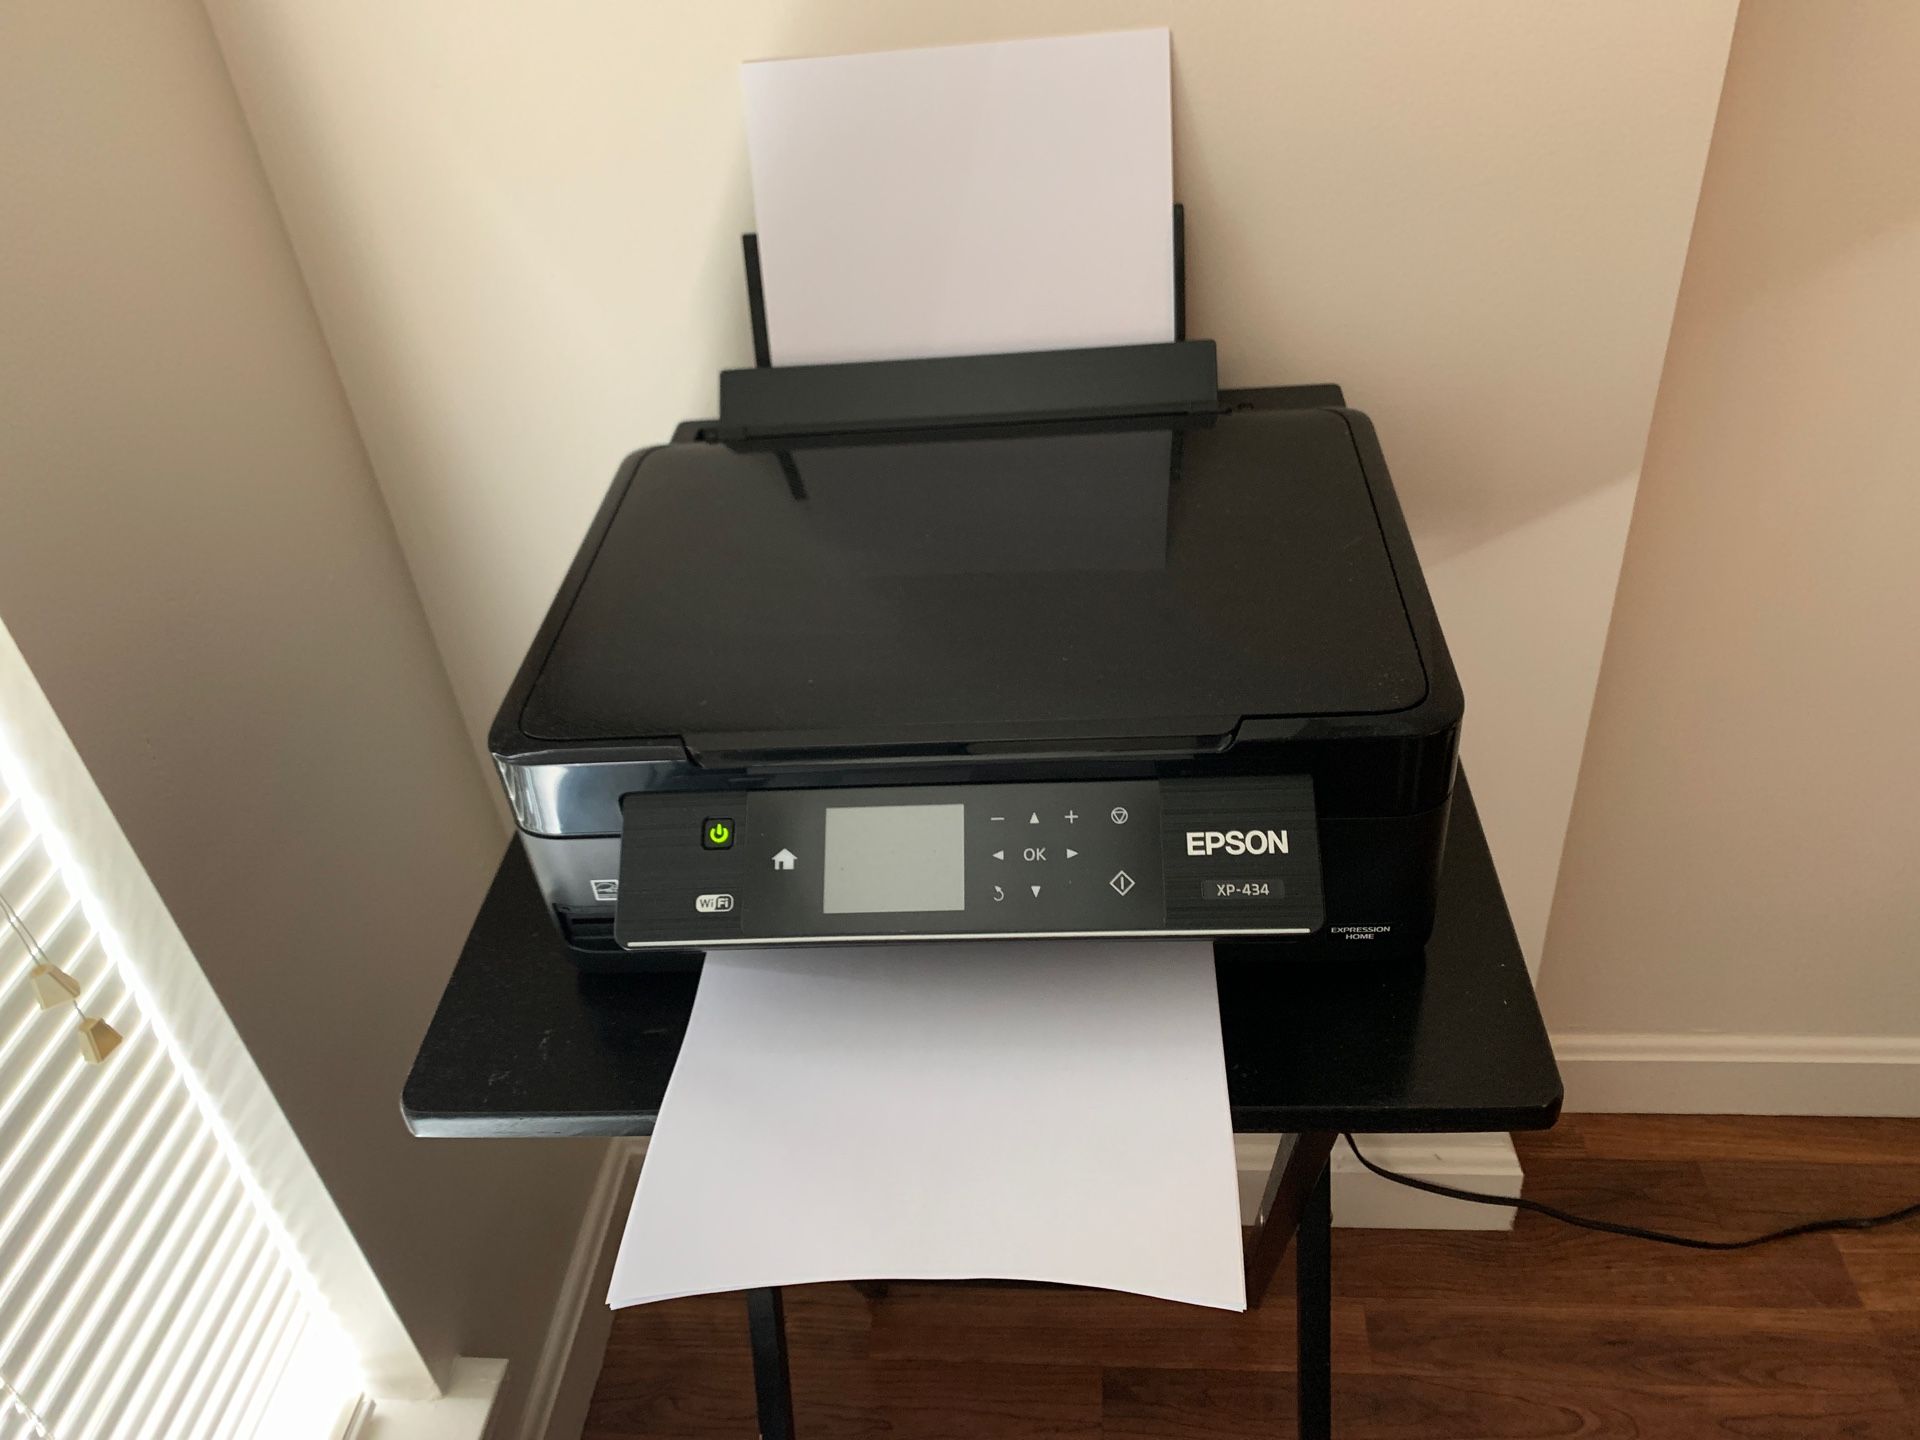 Epson XP-434 Printer with wifi